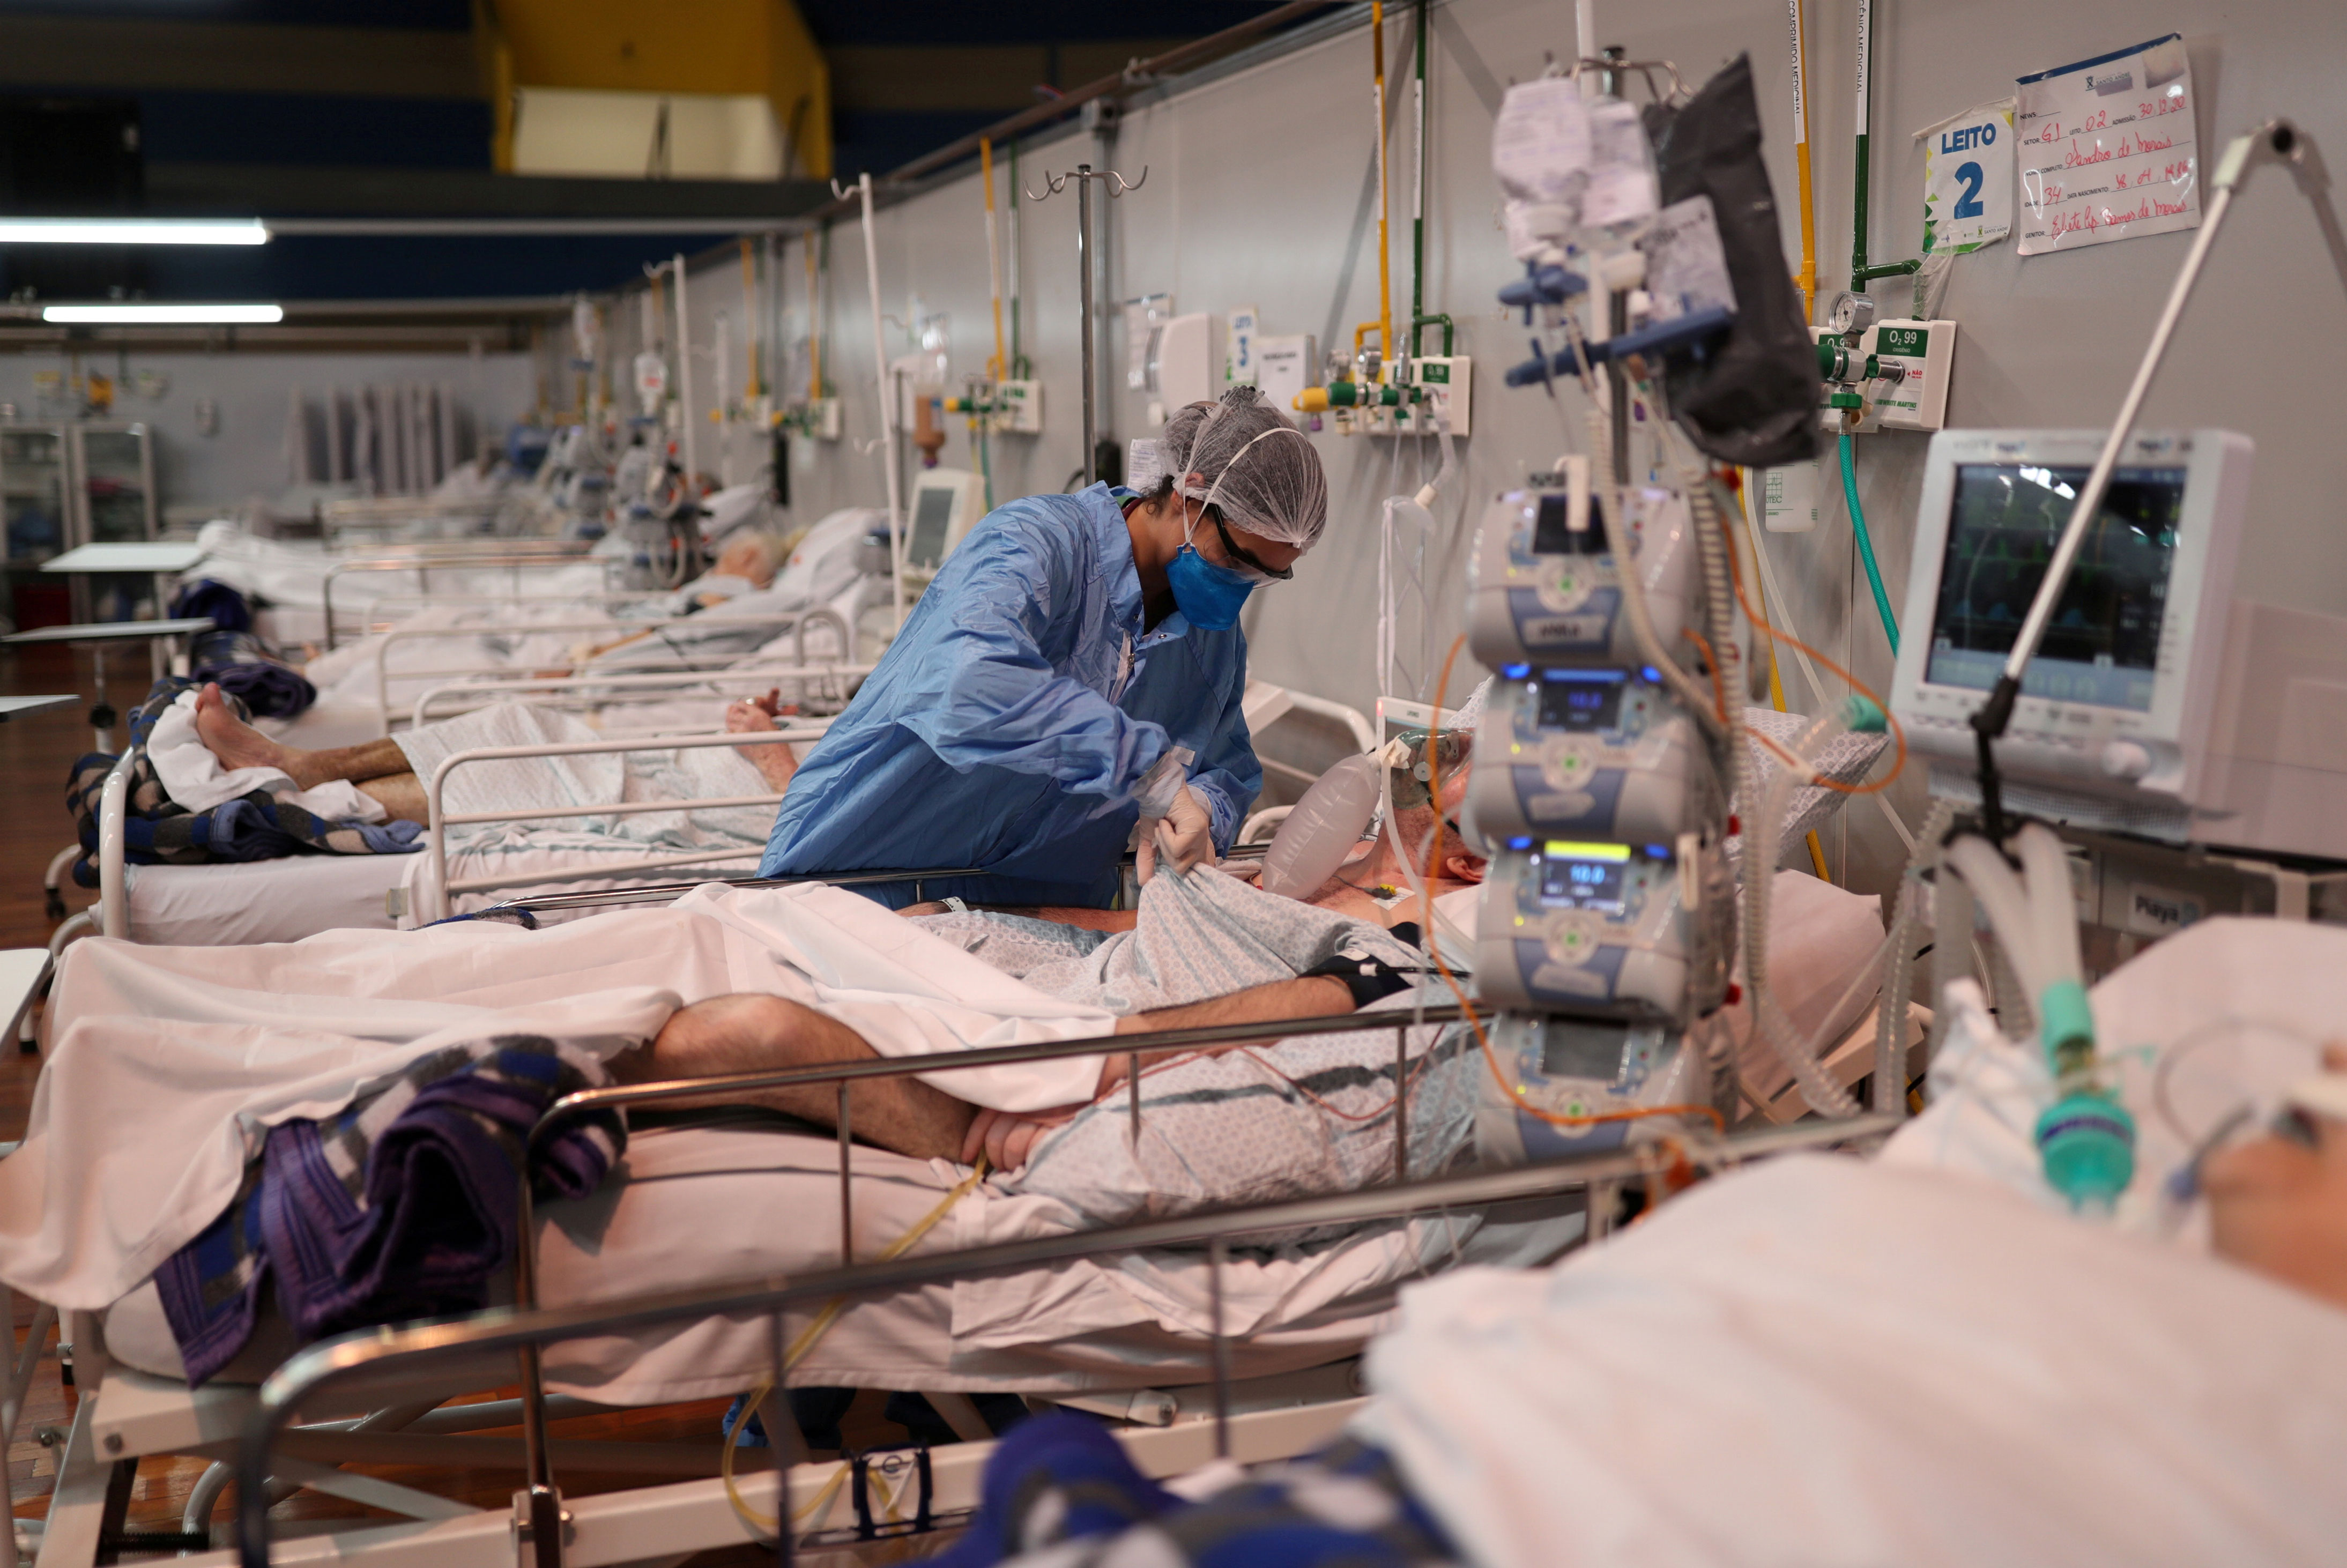 Enfermeira trata de paciente com Covid-19 em hospital de campanha em Santo André